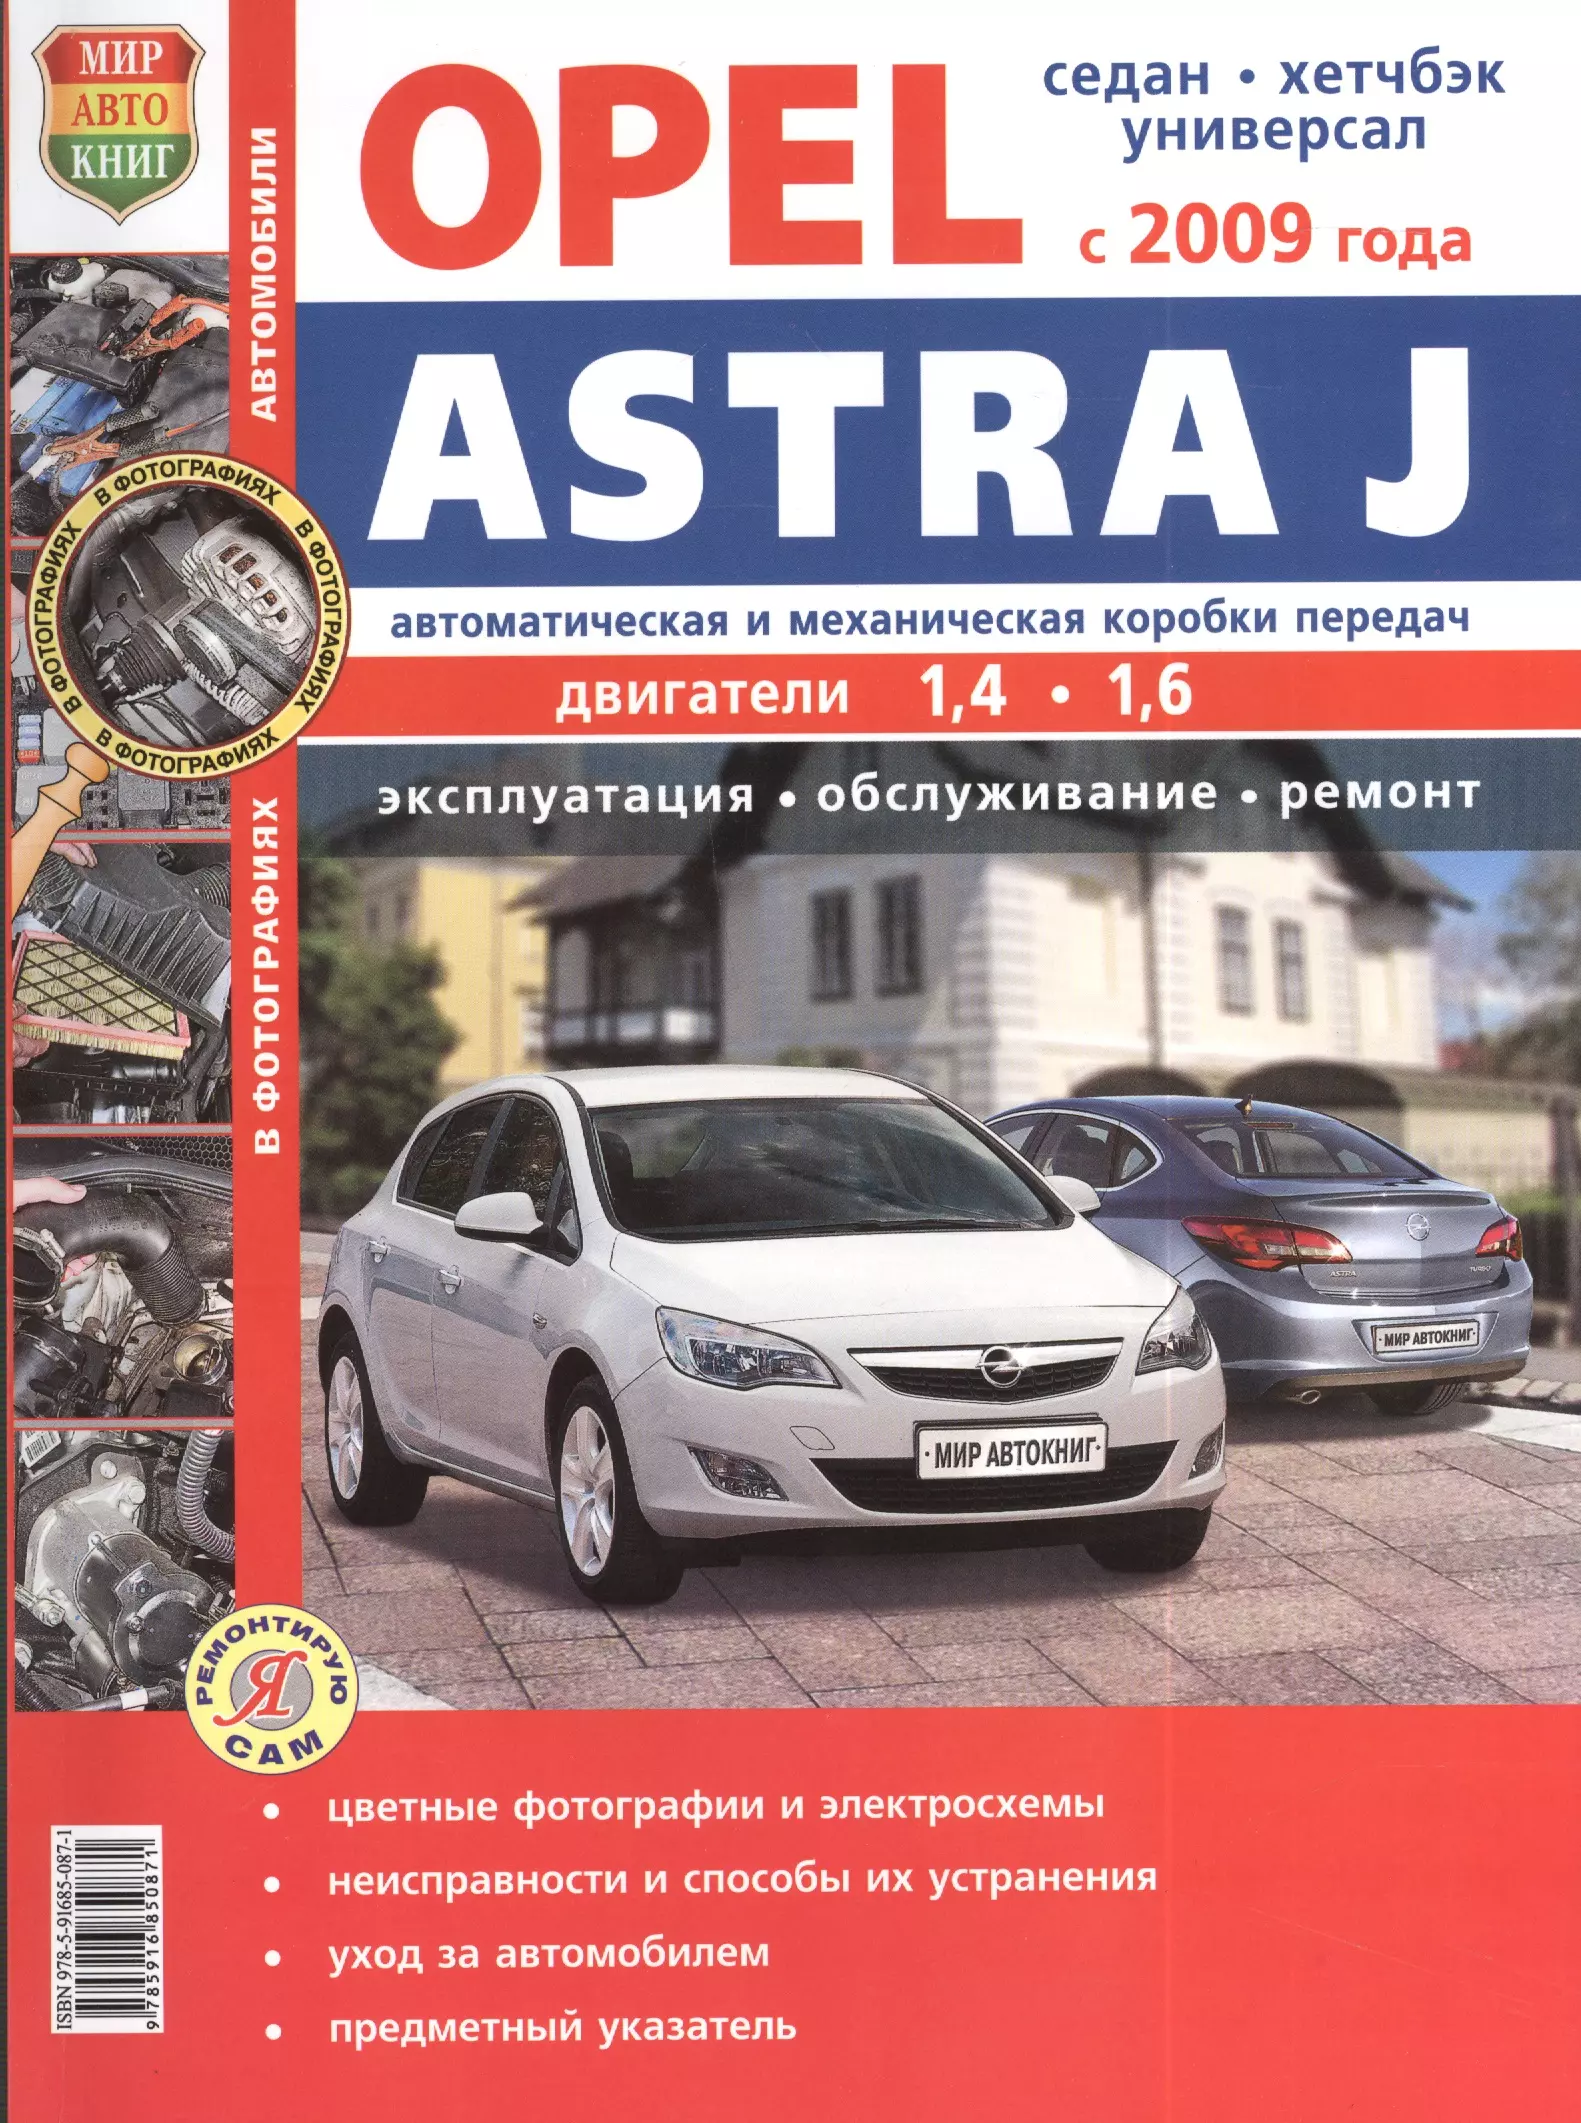 Автомобиль ремонт опель. Книга Опель. Книга Opel Astra j. Opel Astra руководство по ремонту. Инструкция по ремонту Opel asta j.